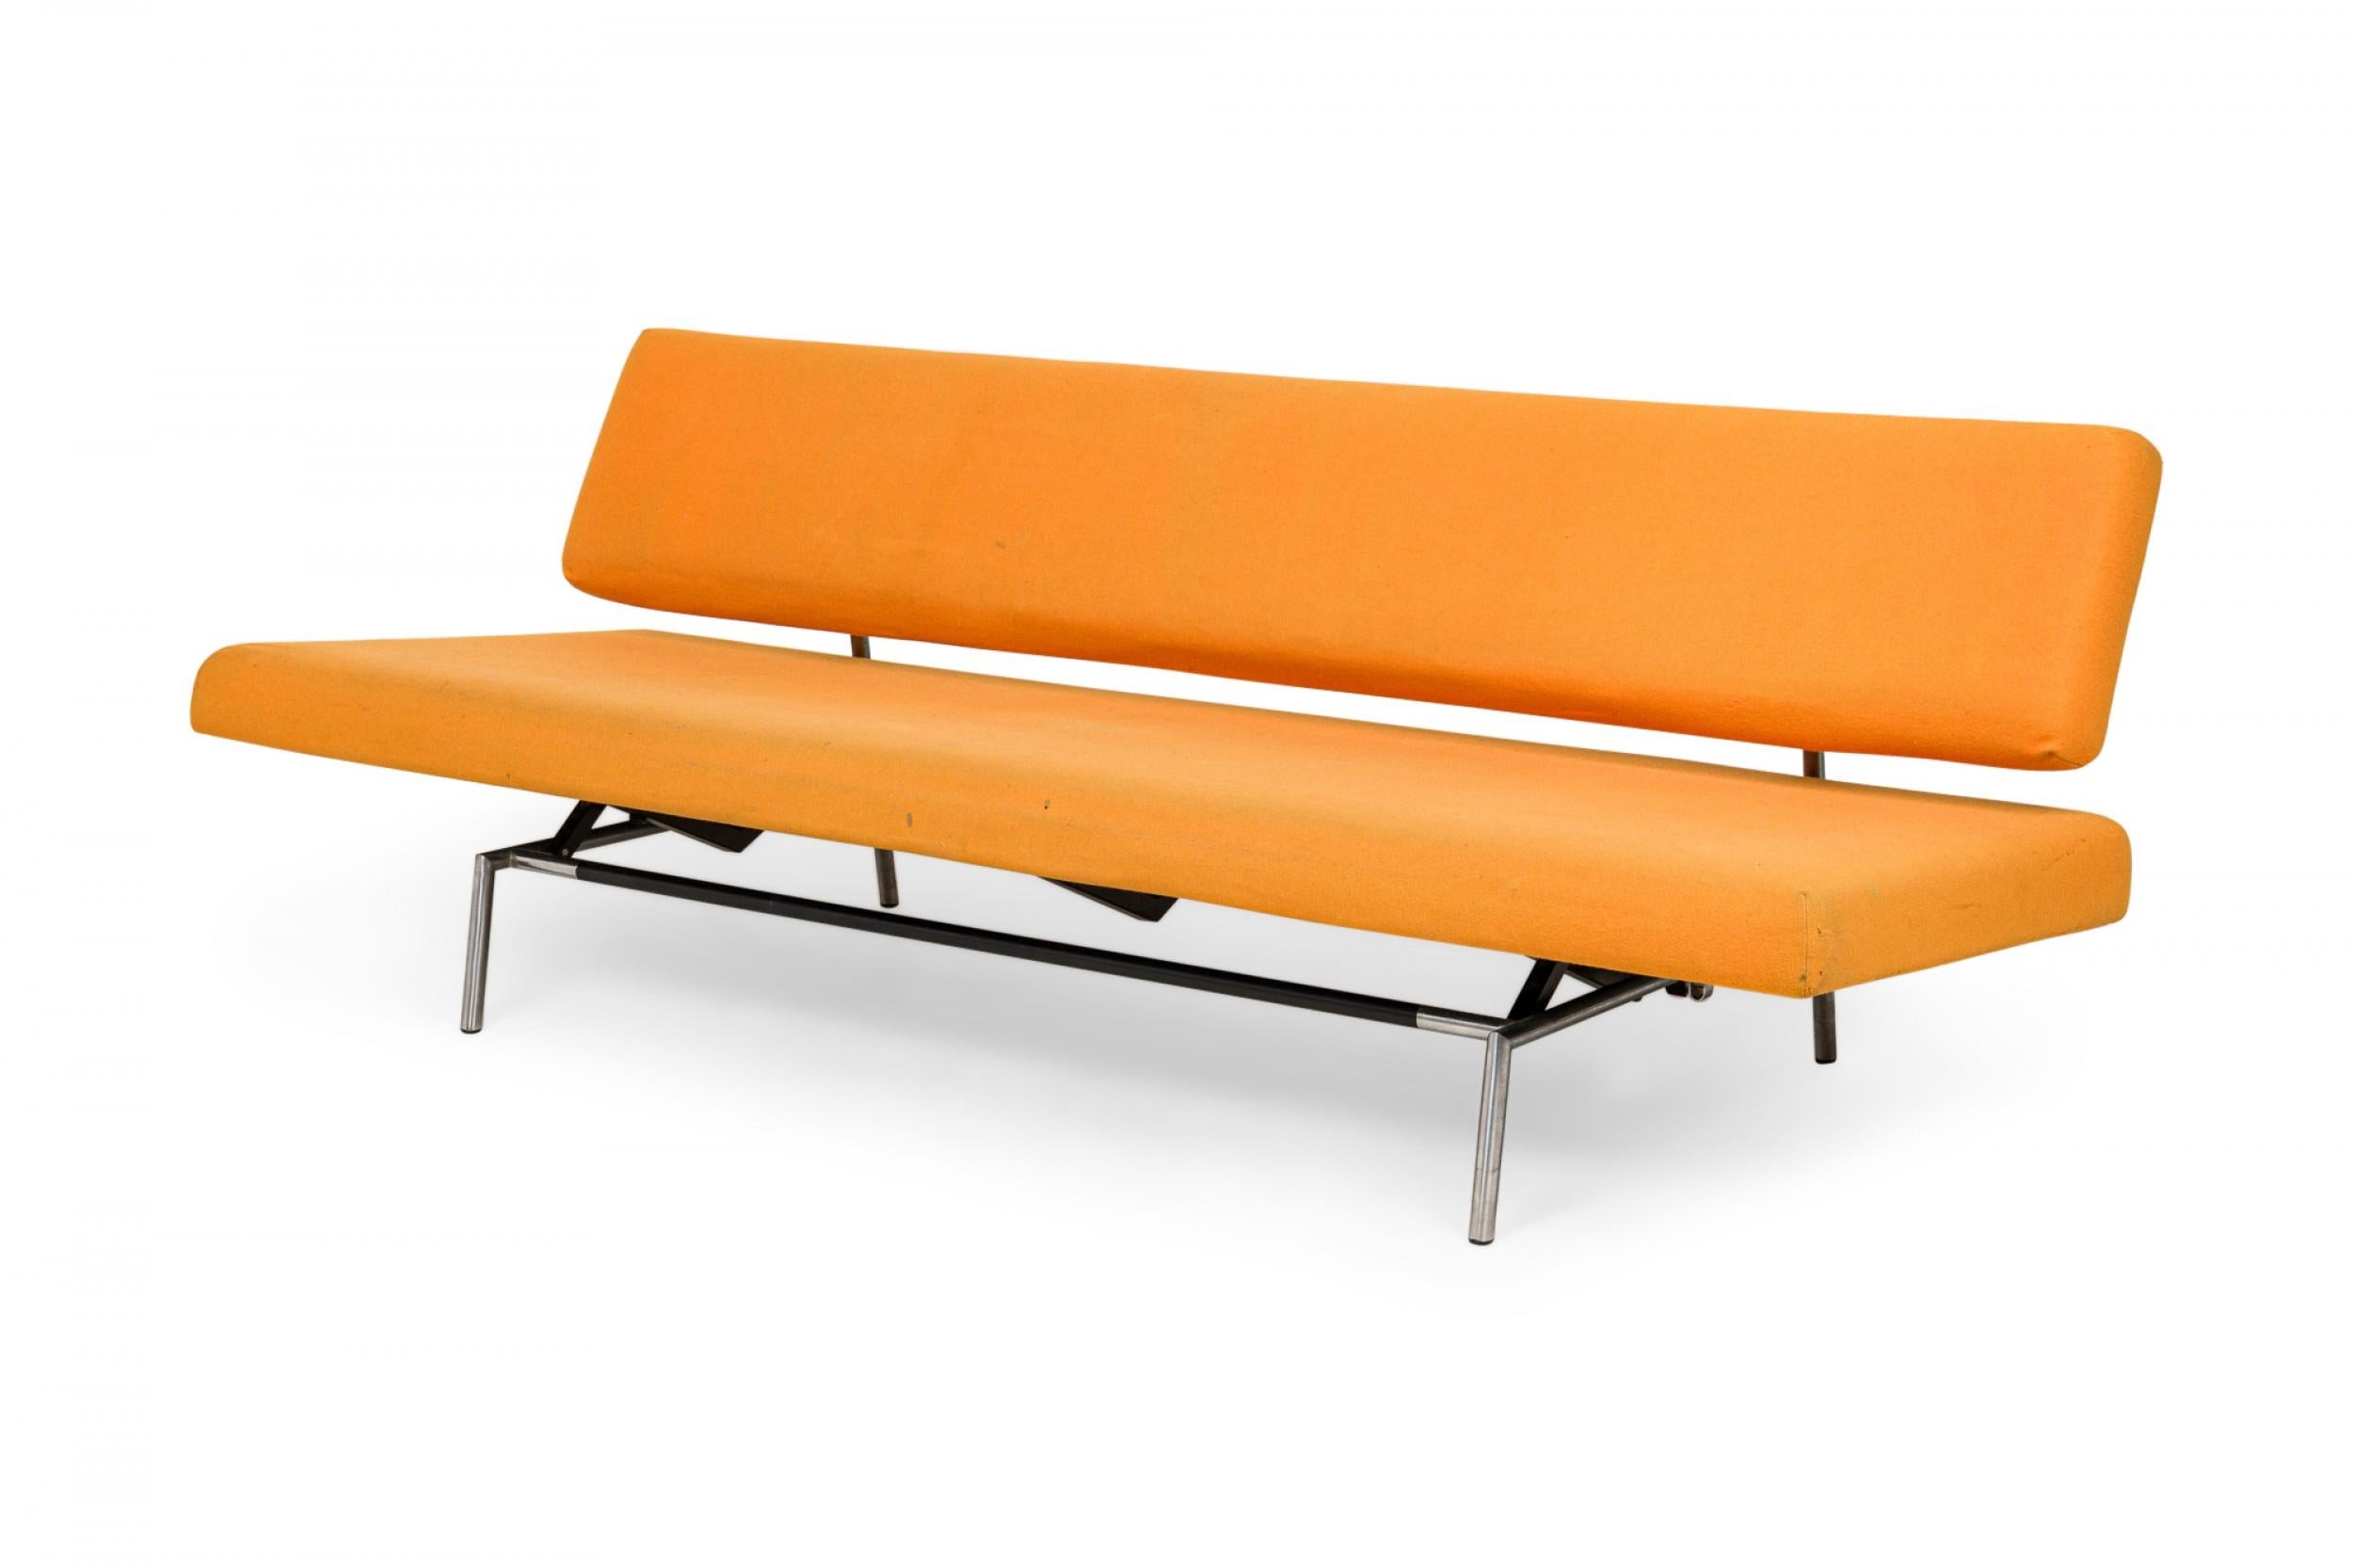 Metal Martin Visser for Spectrum Orange Felt Convertible Sleeper Sofa (model BR02) For Sale